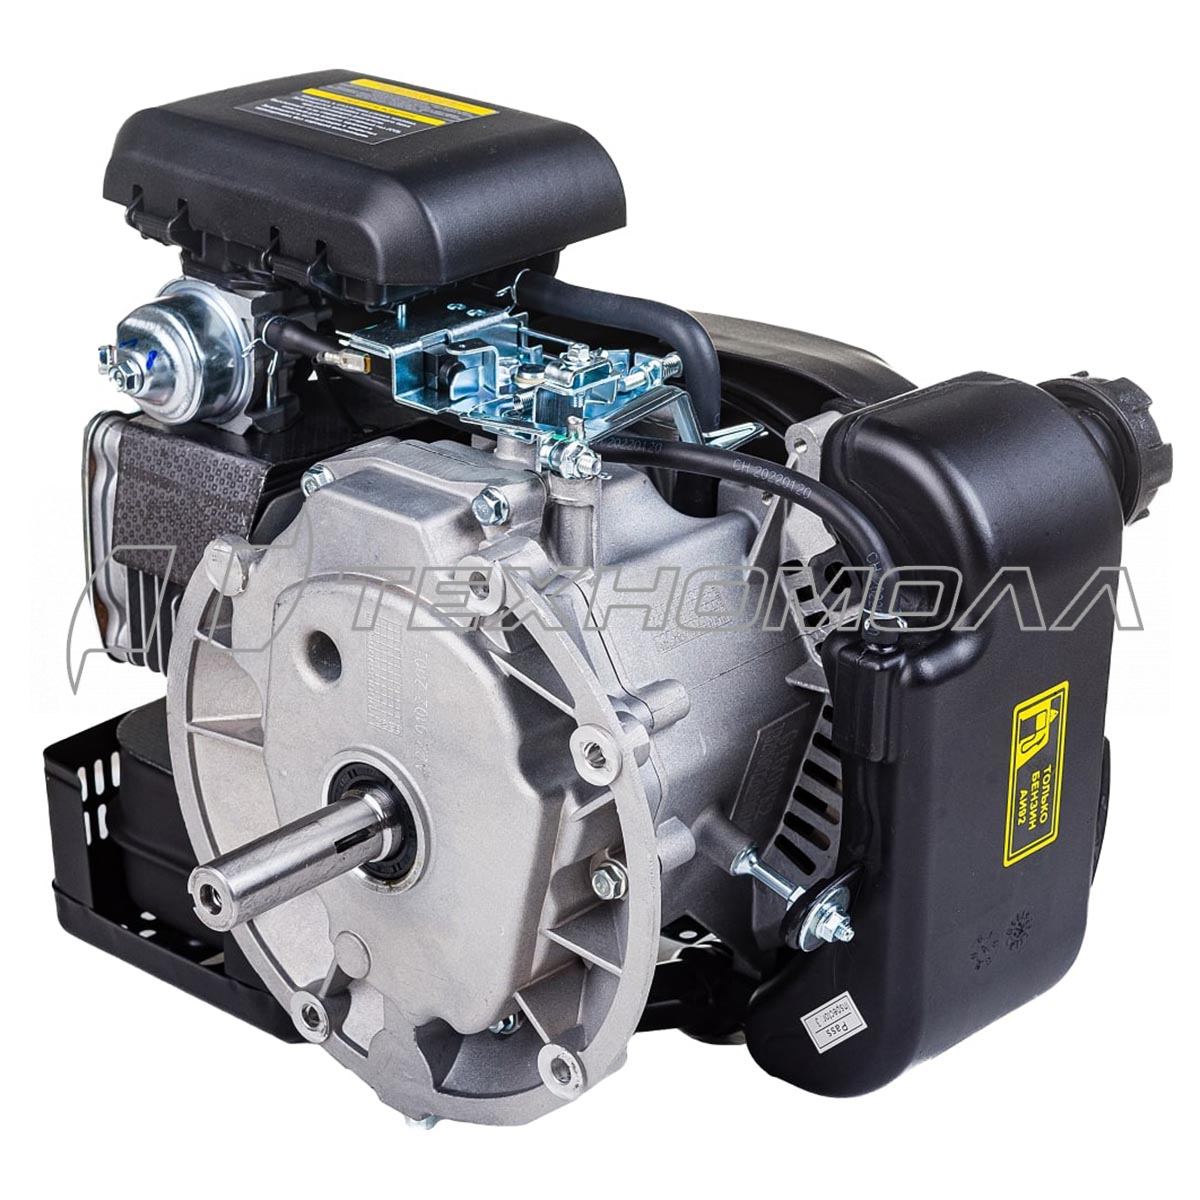 Двигатель CHAMPION G160VK/2 5,0лс/3,7кВт 159см³ вертикальный 22,2мм шпонка 13кг для культиваторов